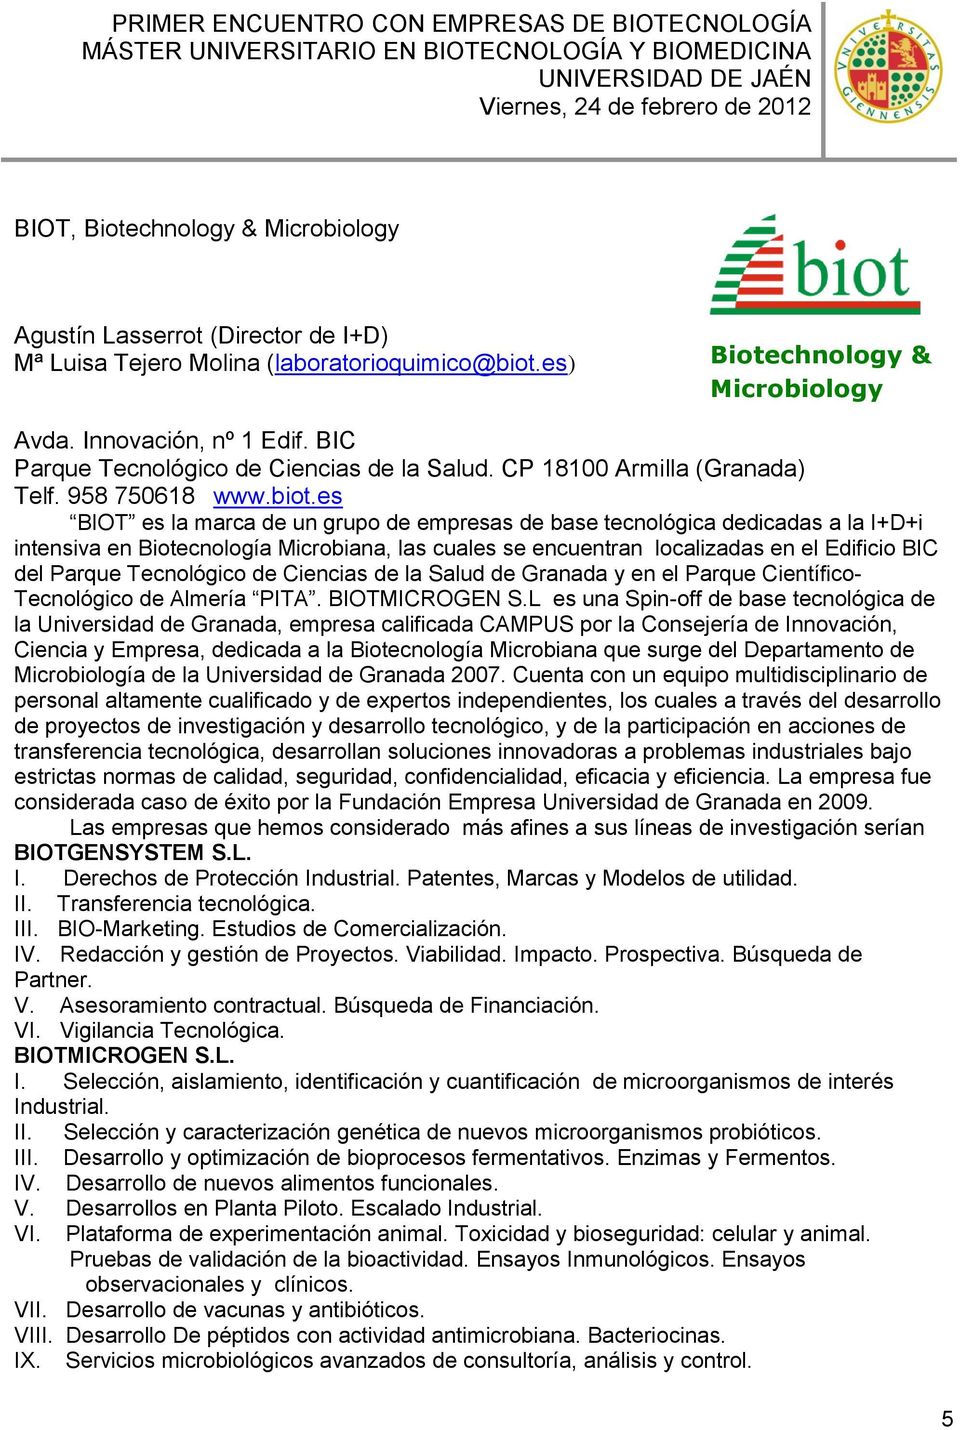 es BIOT es la marca de un grupo de empresas de base tecnológica dedicadas a la I+D+i intensiva en Biotecnología Microbiana, las cuales se encuentran localizadas en el Edificio BIC del Parque